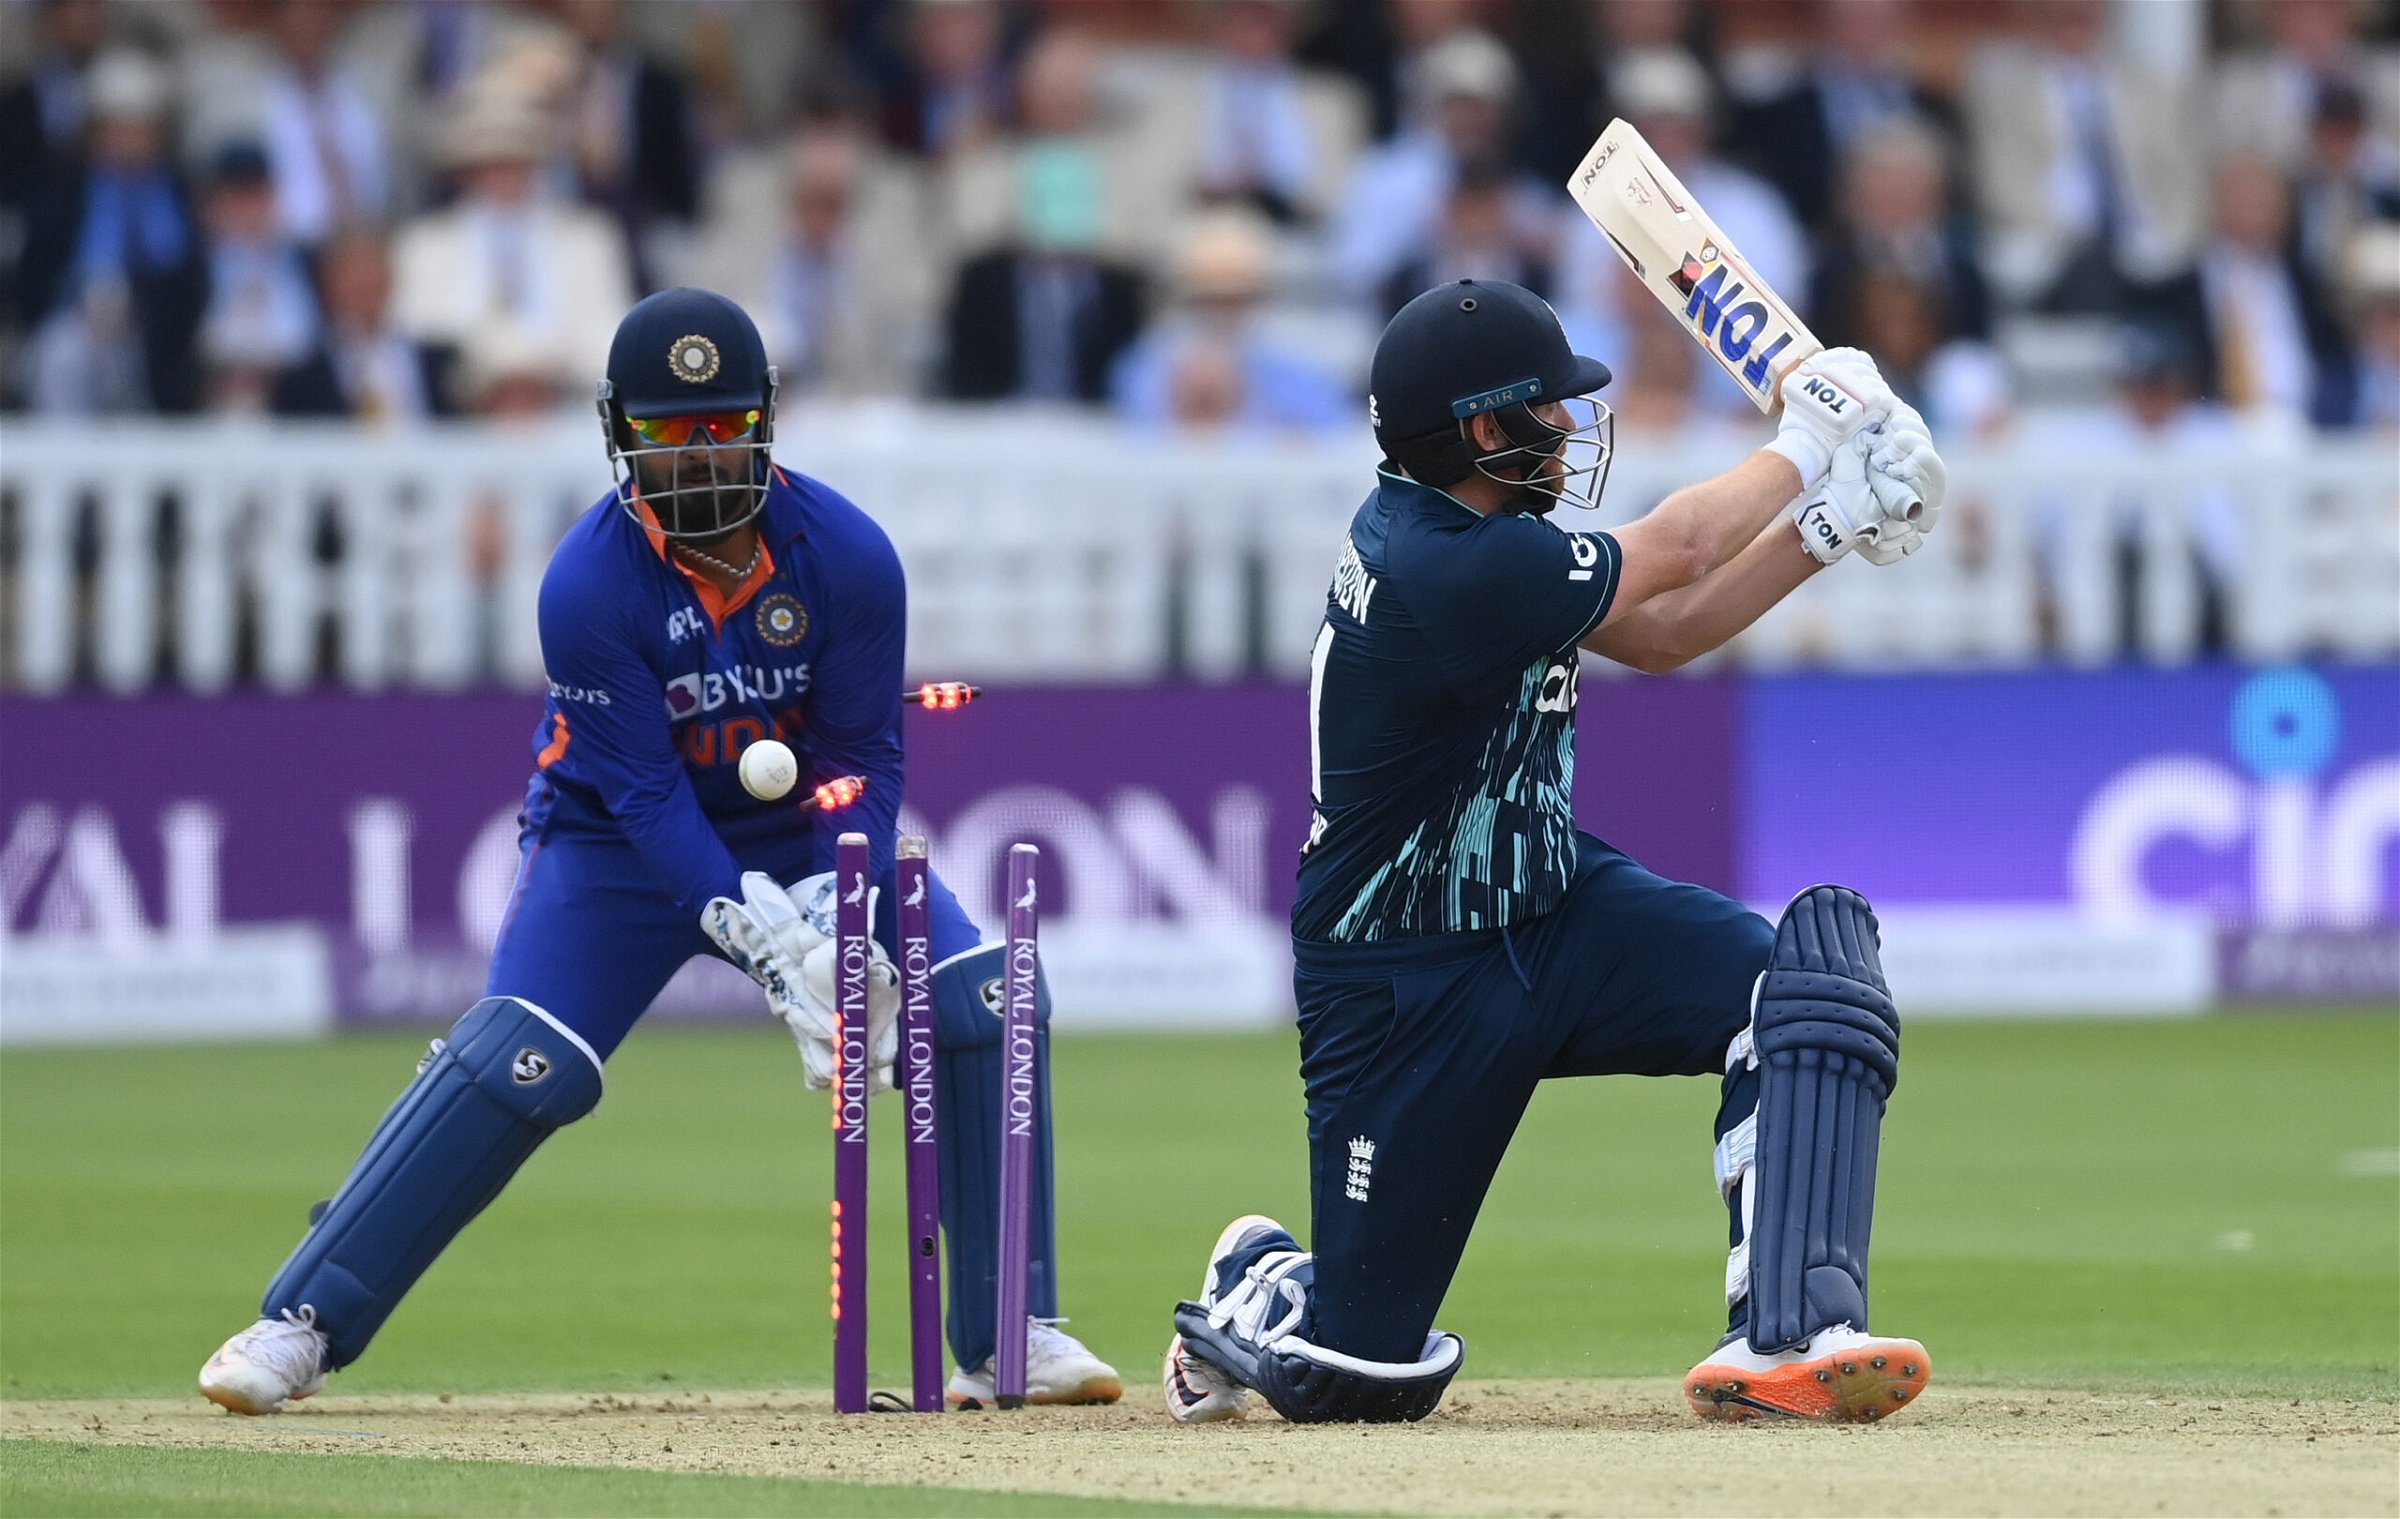 Ind vs Eng: चहल की जादुई गेंदबाजी के बावजूद लॉर्ड्स में मिली 100 रनों की हार, रोहित शर्मा की यह गलती बनी हार का सबसे बड़ा कारण